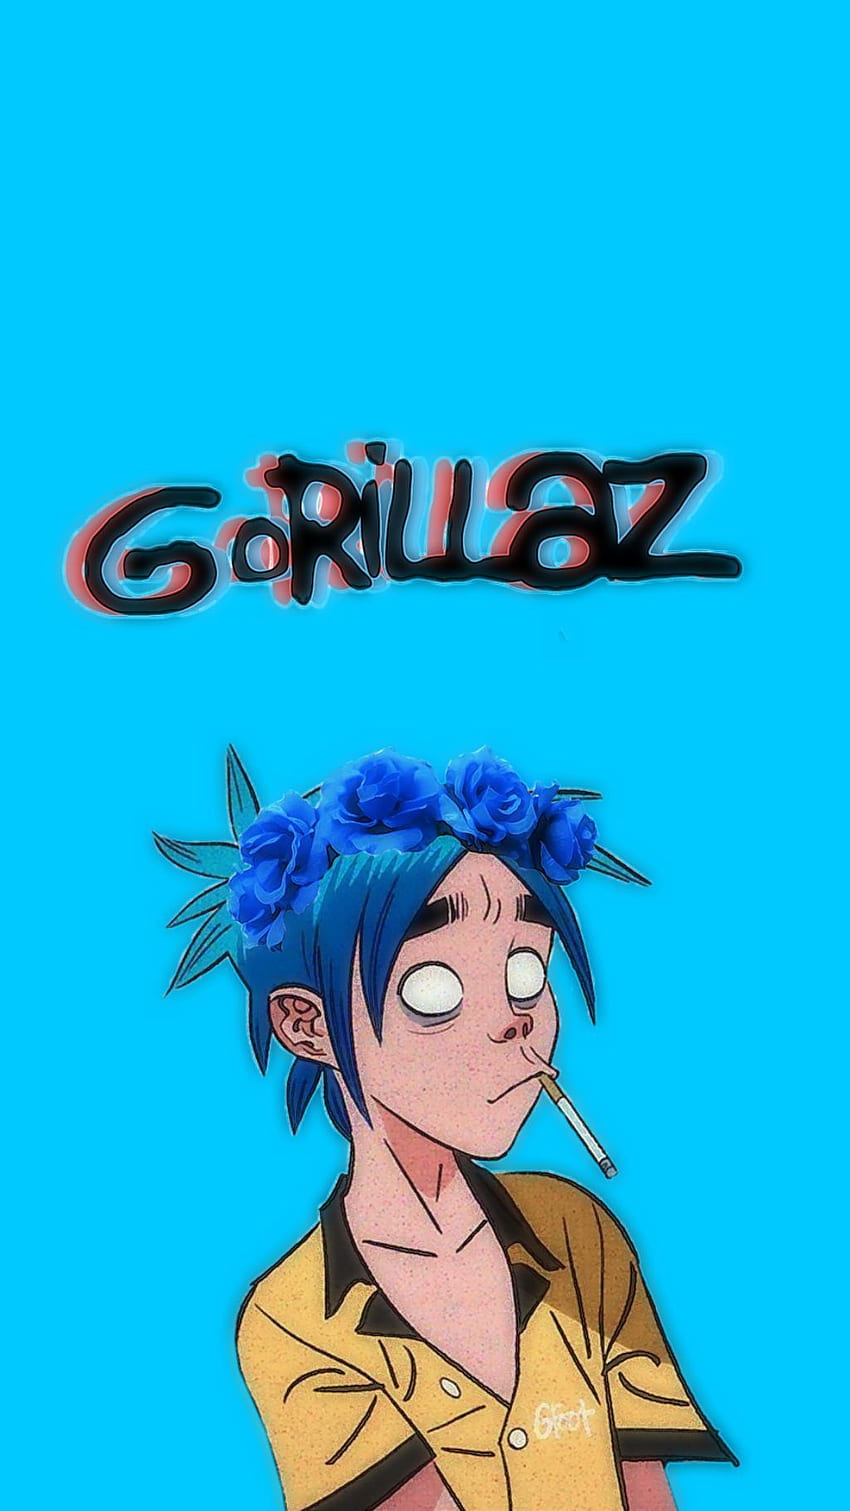 2D Gorillaz wallpaper by Katsu2D  Download on ZEDGE  5c35